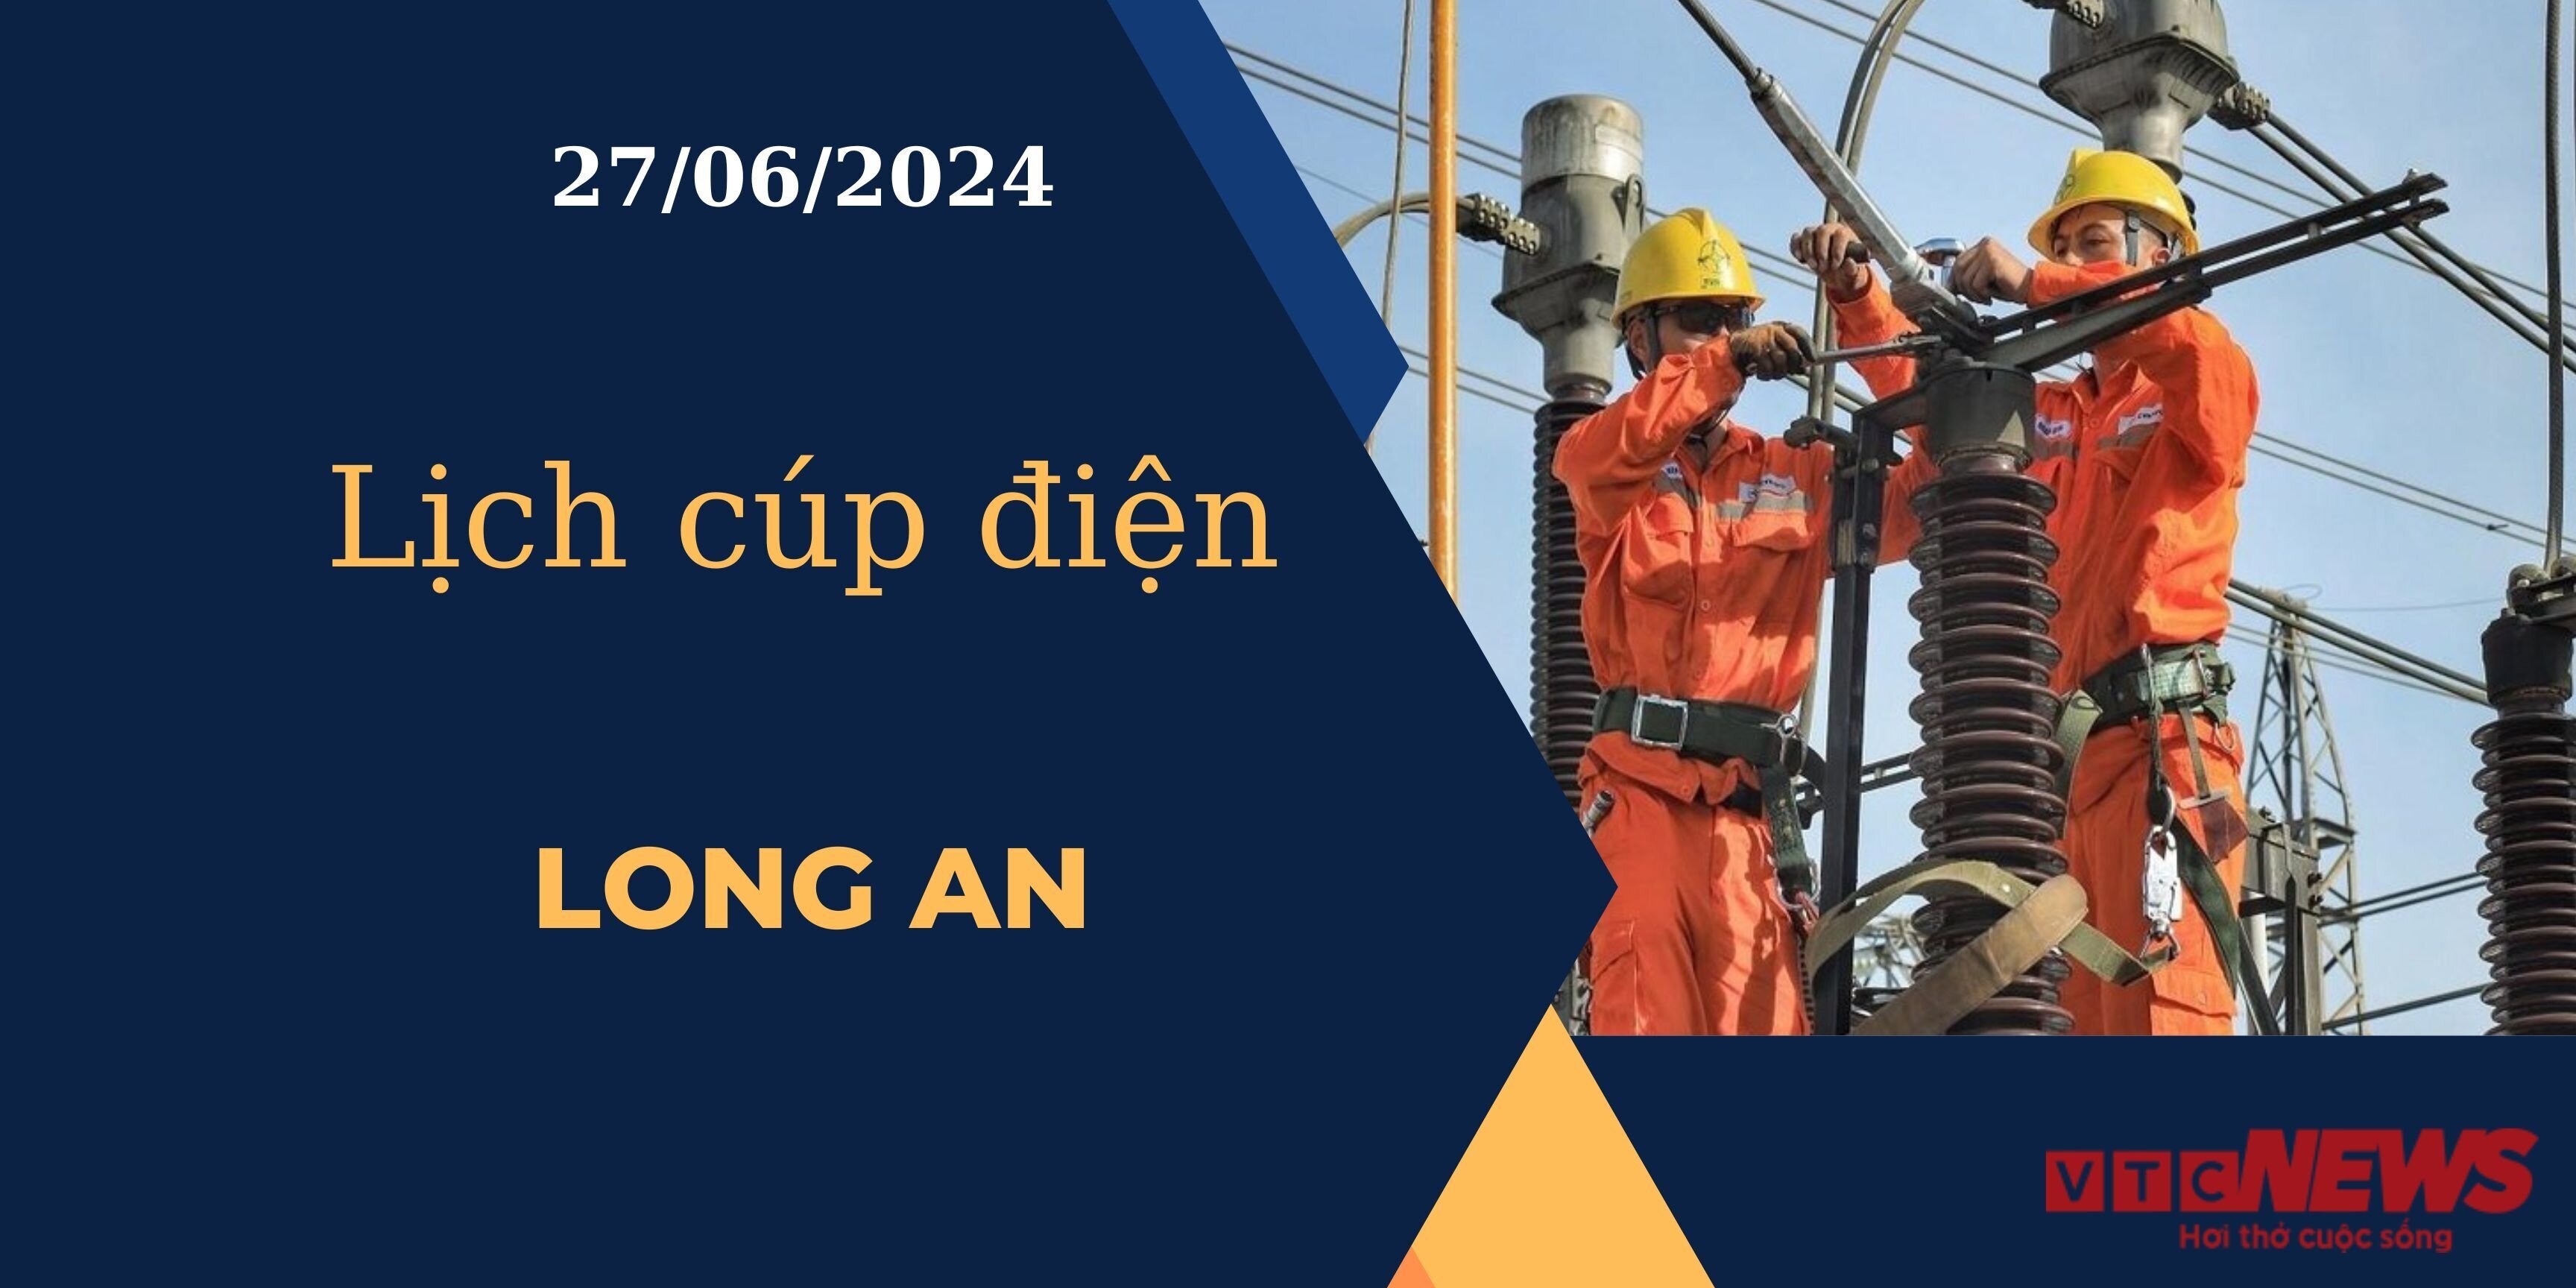 Lịch cúp điện hôm nay ngày 27/06/2024 tại Long An